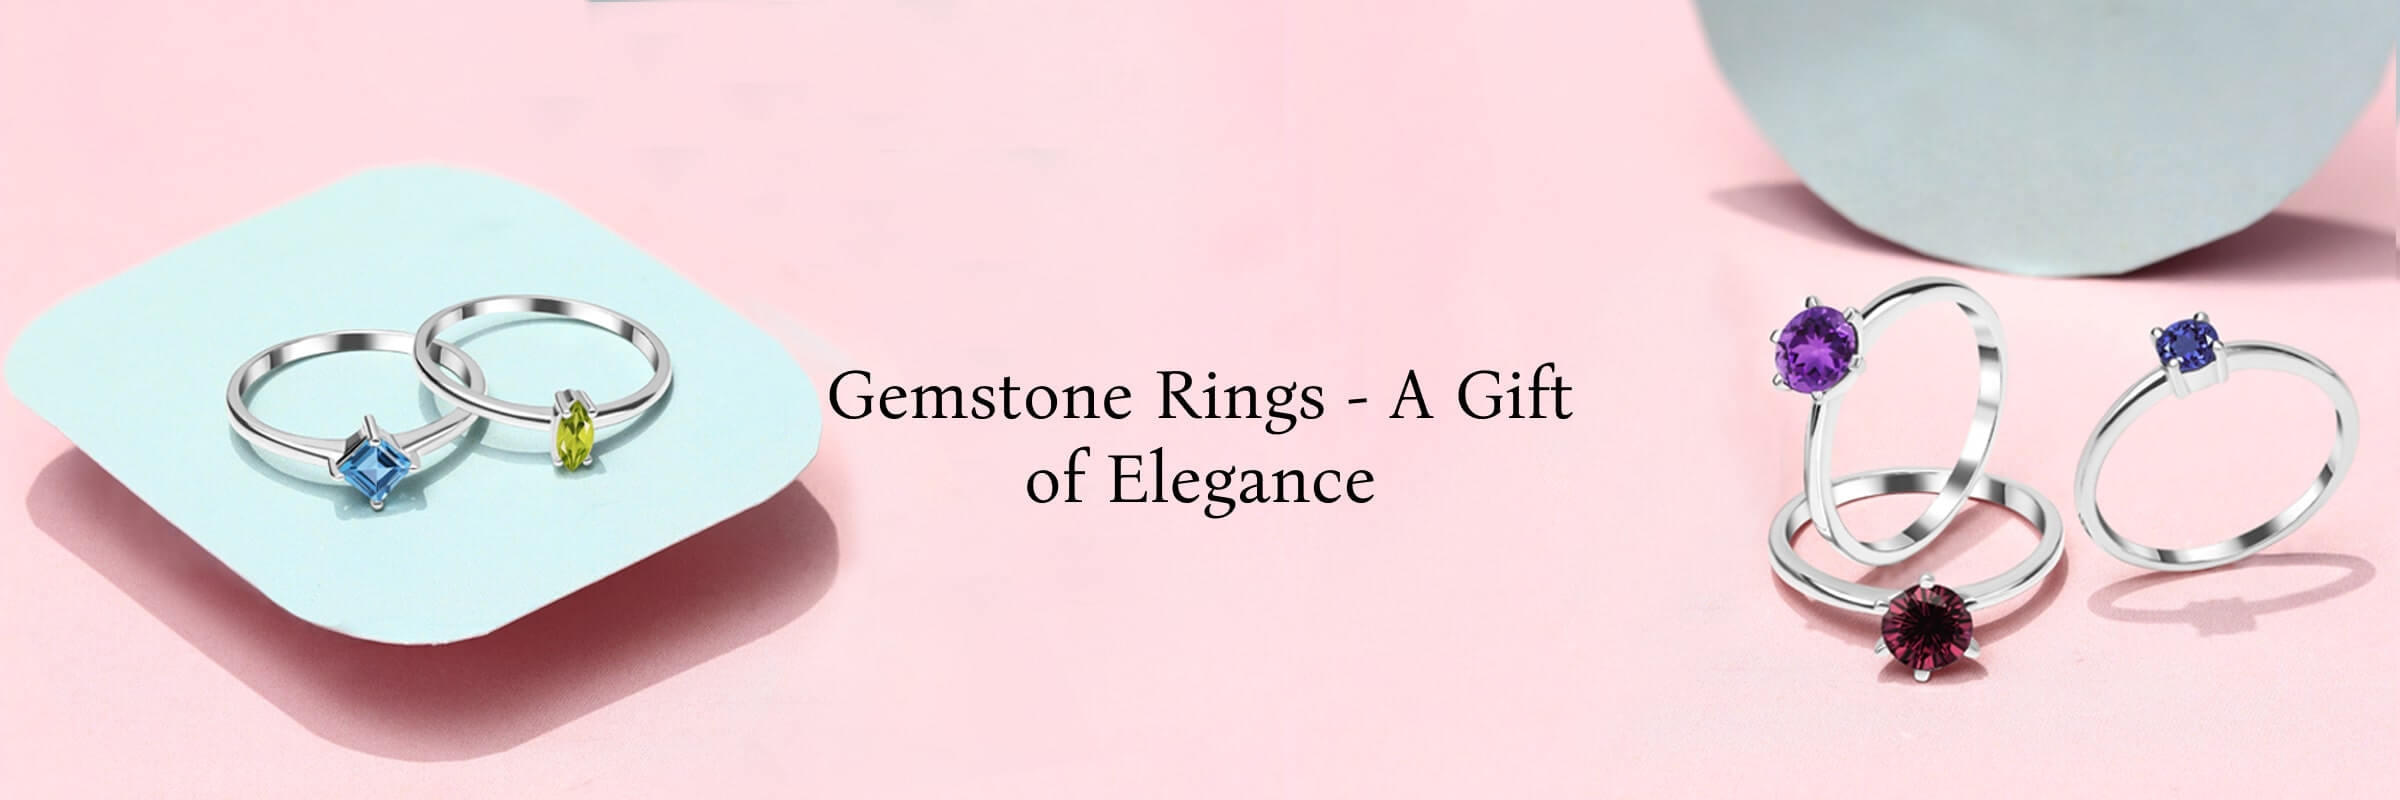 Benefits of choosing Gemstone Rings